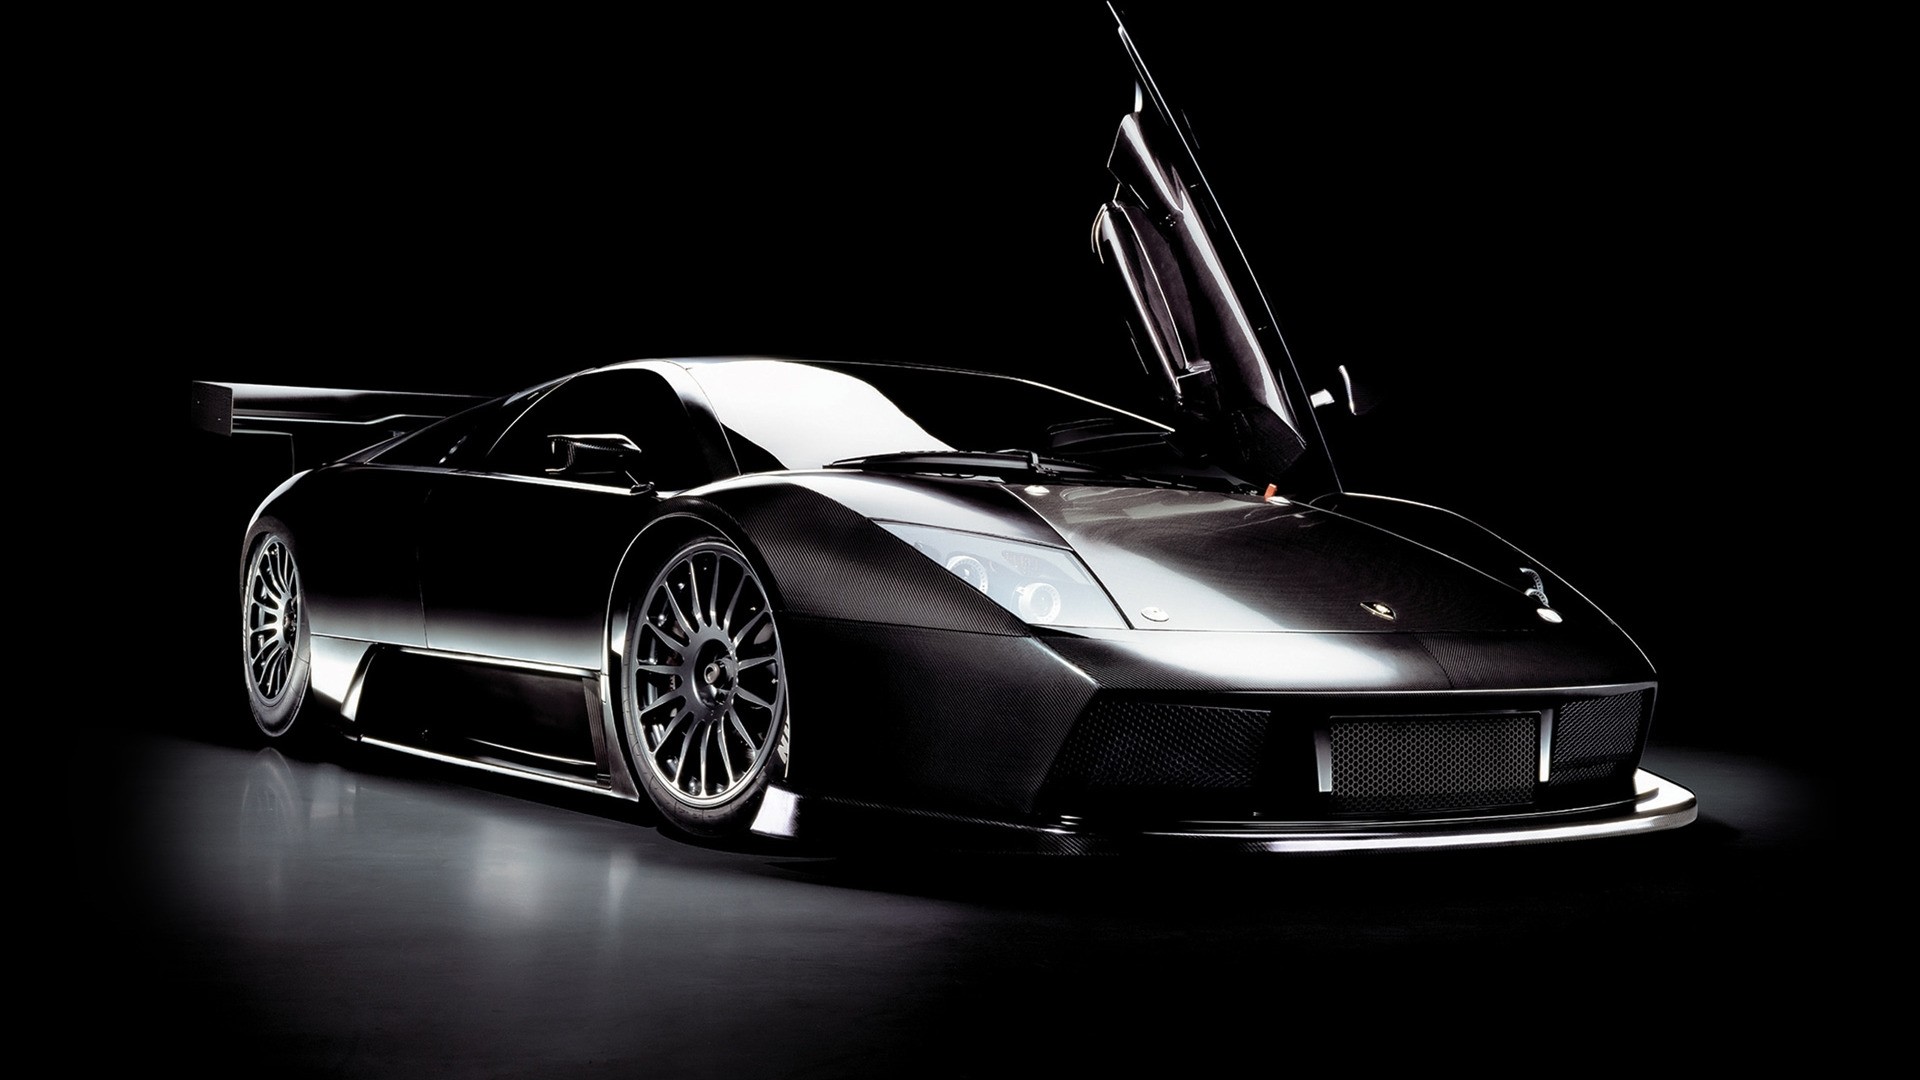 Hình nền đen, siêu xe Lamborghini Murcielago: Tốc độ và sự tinh tế kết hợp đượm trong bức hình nền đen, siêu xe Lamborghini Murcielago. Bạn sẽ có cơ hội khám phá chiếc siêu xe đầy sức mạnh này và cùng trải nghiệm cảm giác lái xe siêu tốc.